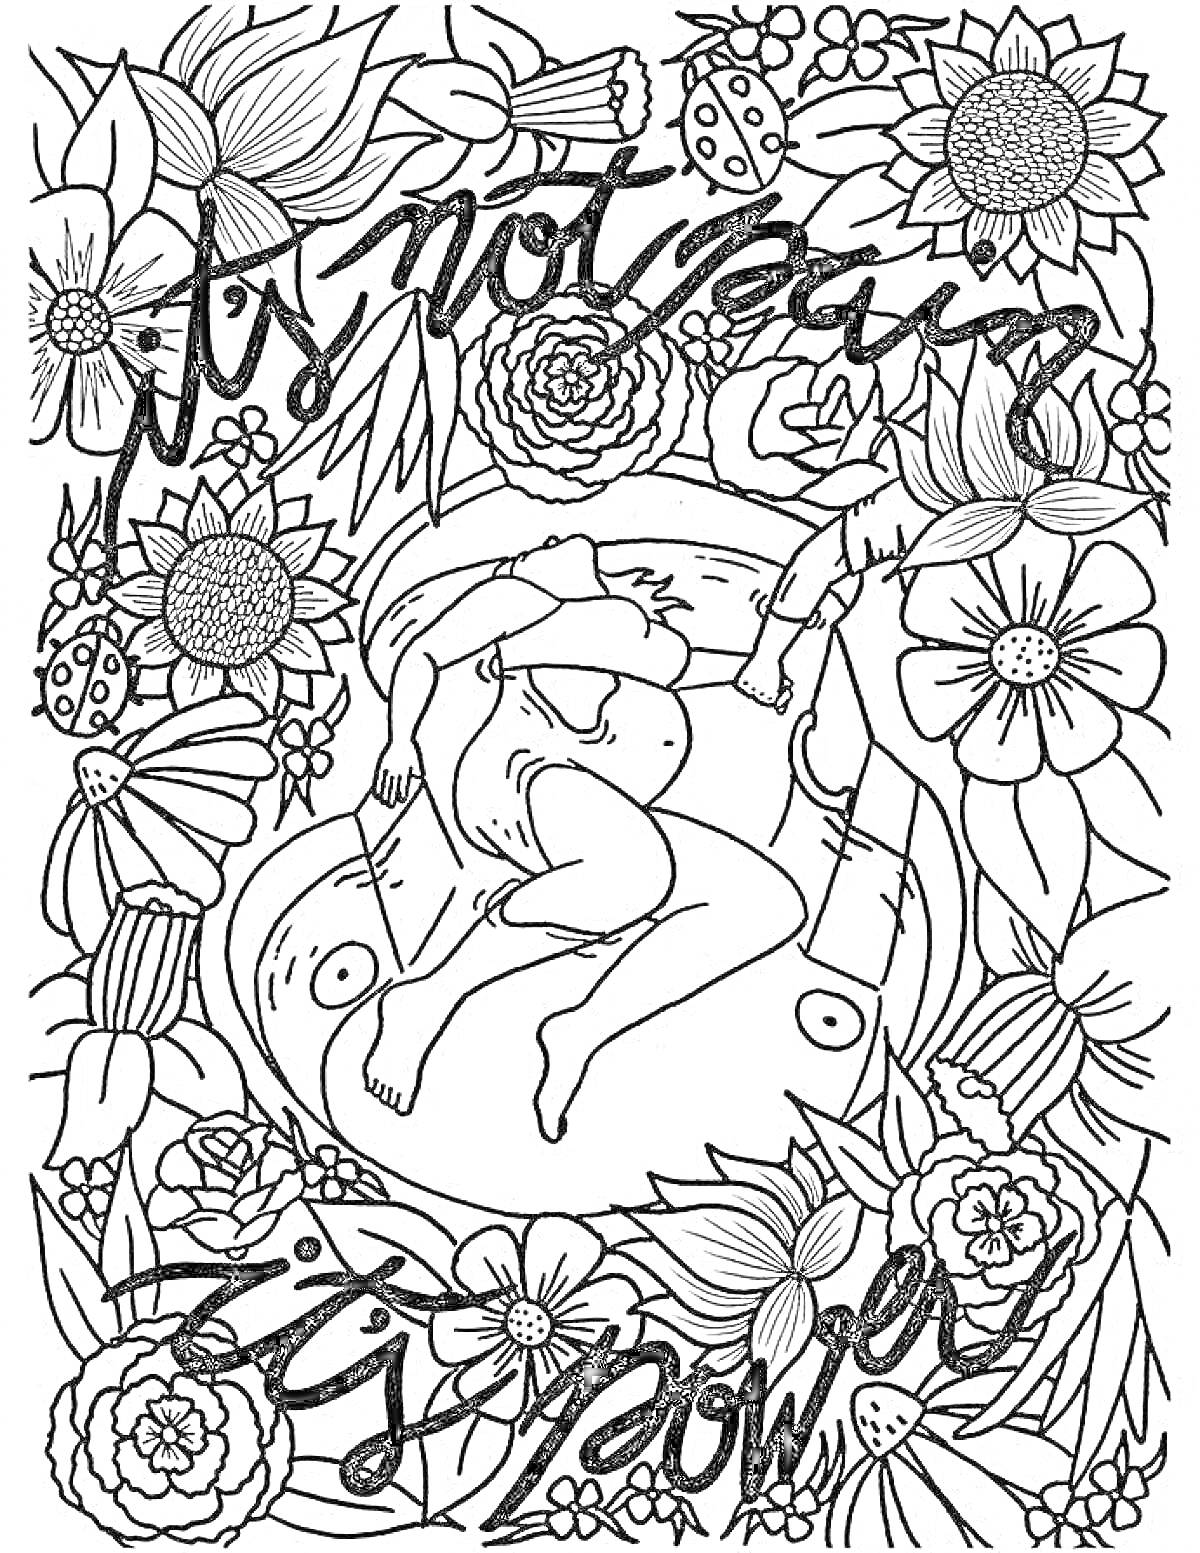 Раскраска Беременная женщина, окружённая цветами, с текстом 